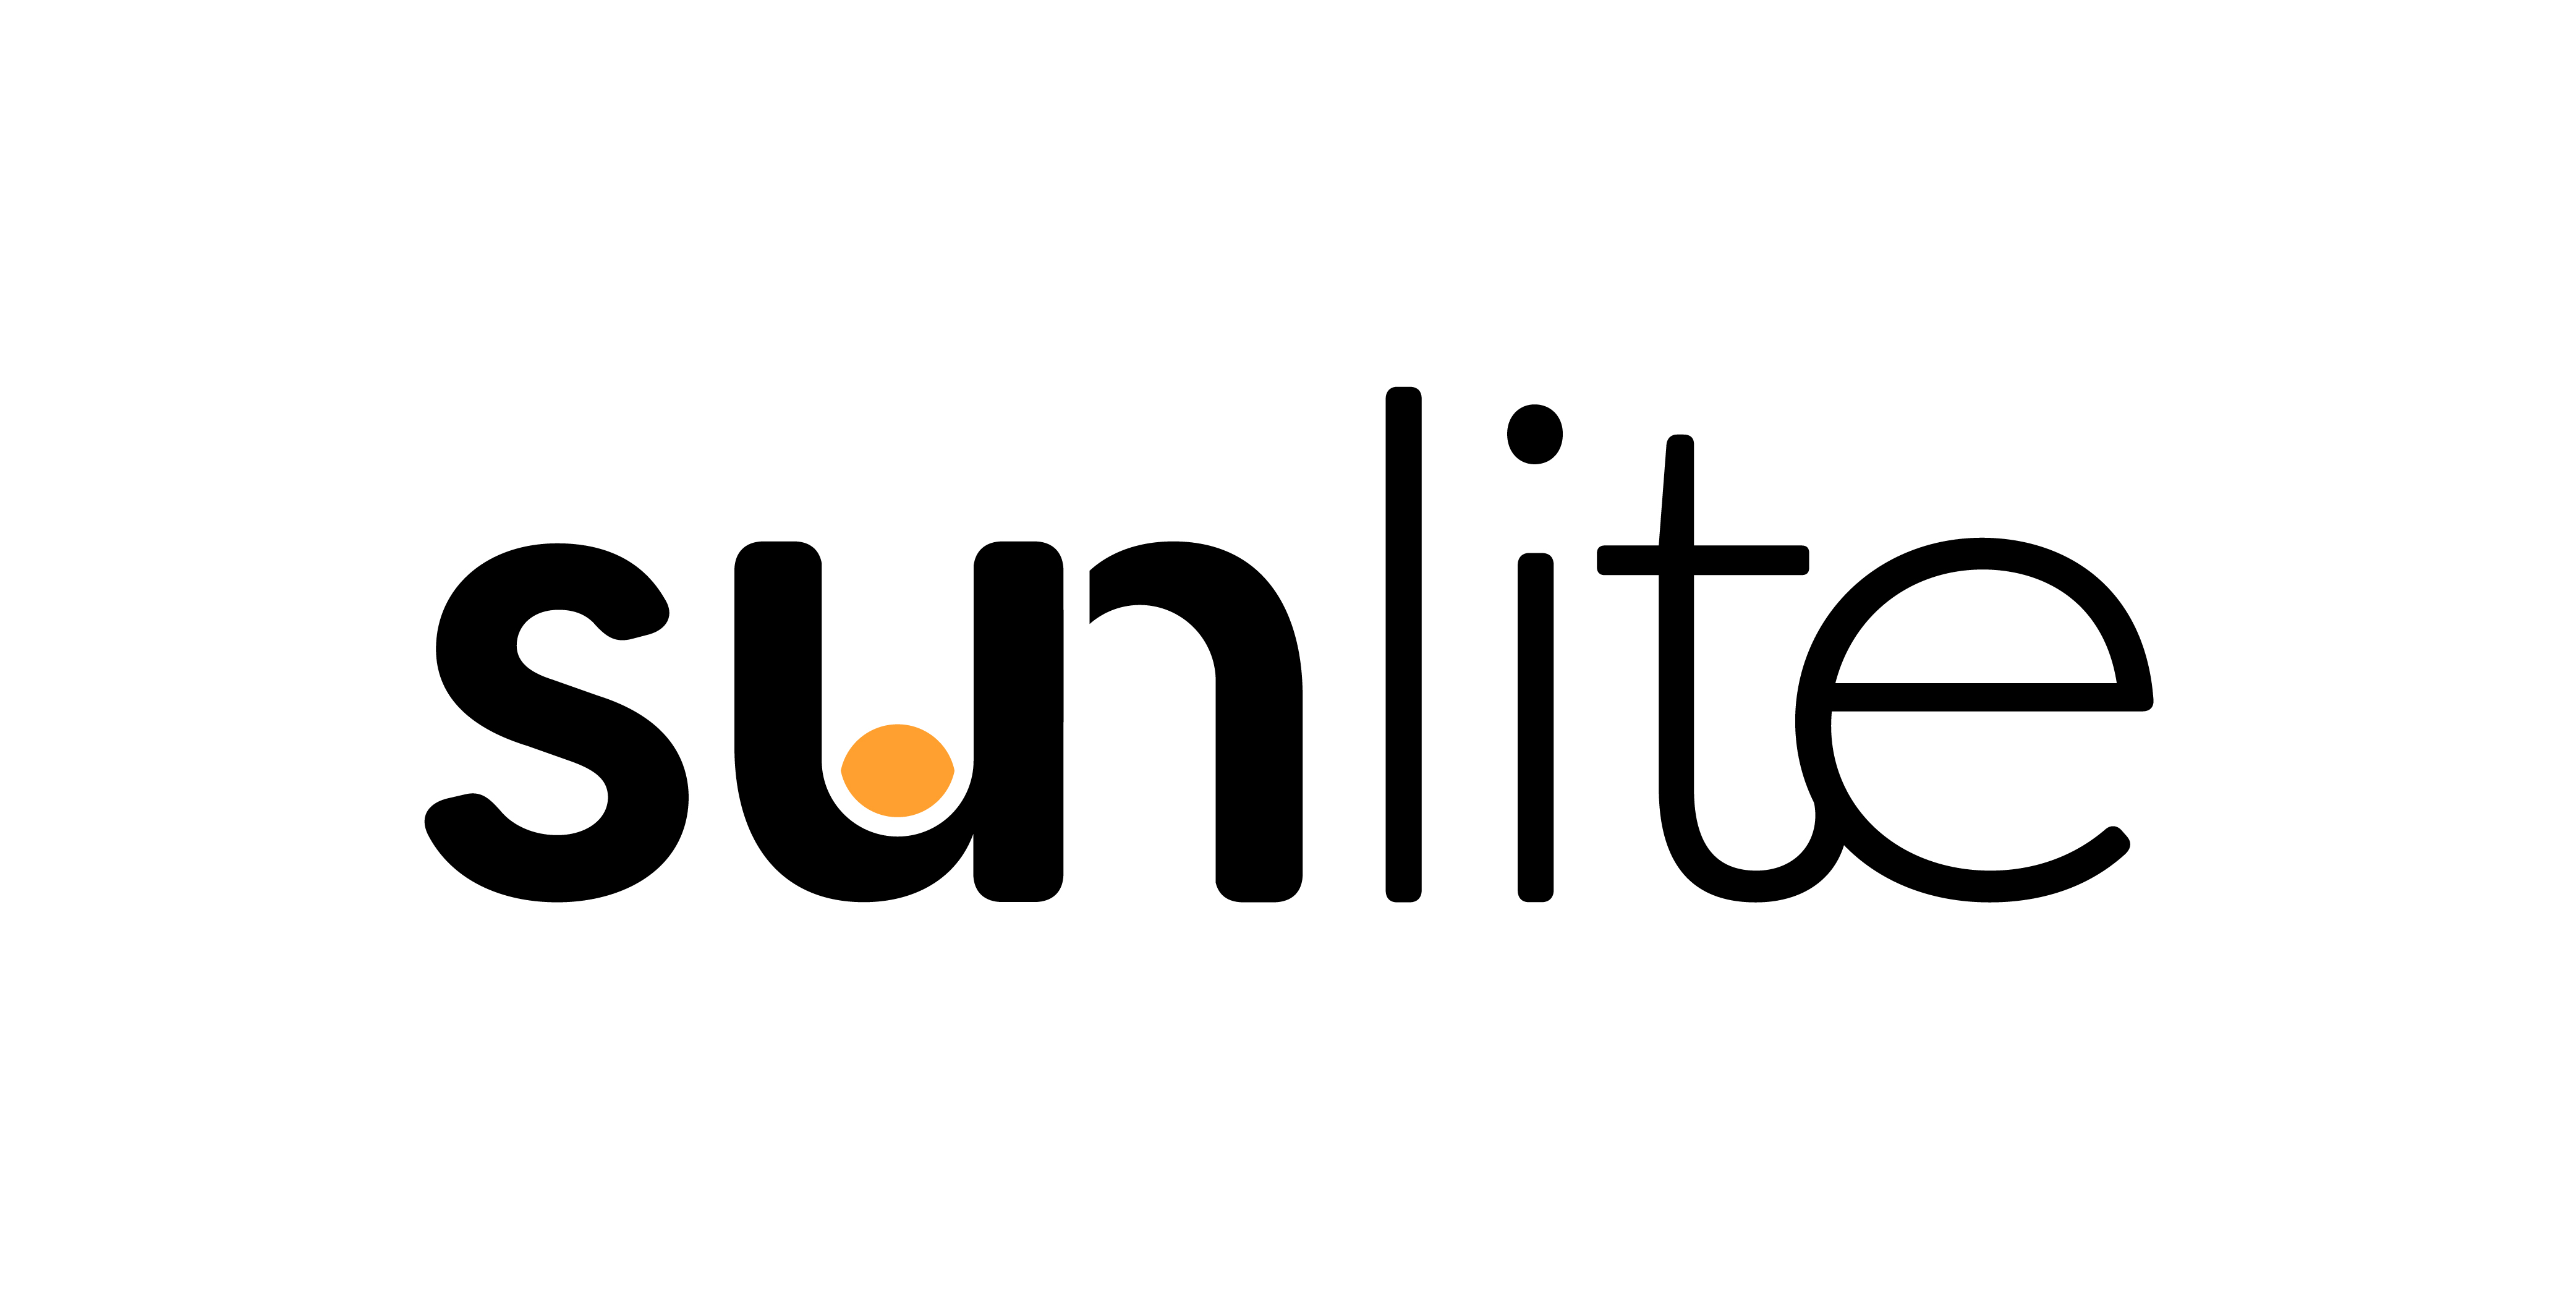 Sunlite в России - магазин, новости, обзоры, интервью, видео, фото, обсуждение.